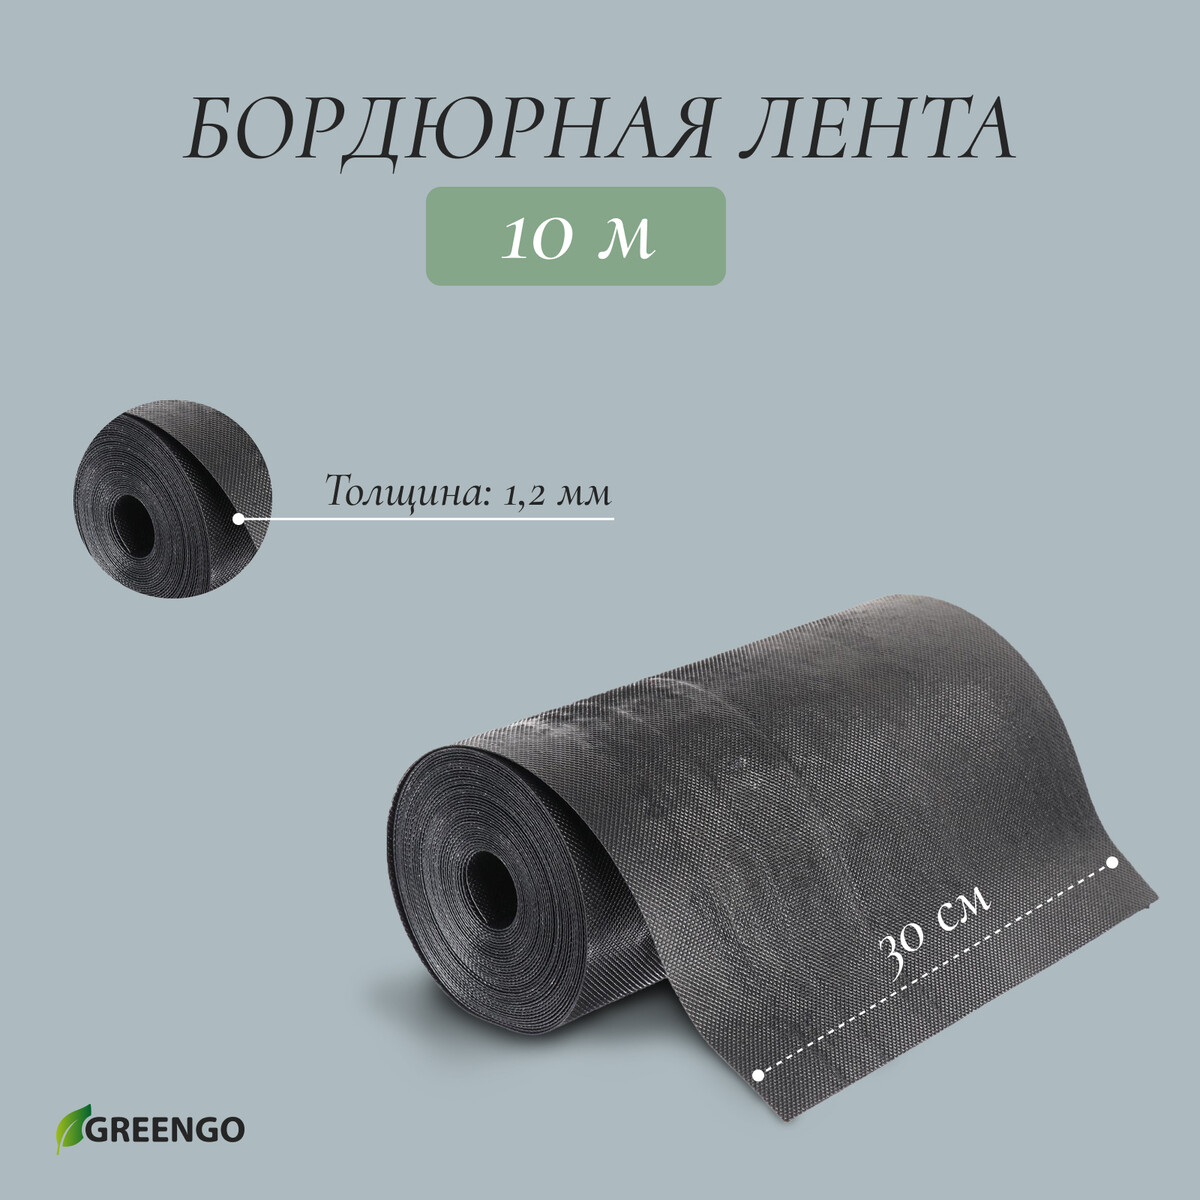 Лента бордюрная, 0.3 × 10 м, толщина 1.2 мм, пластиковая черная, greengo лента бордюрная 0 2 × 10 м толщина 1 2 мм пластиковая черная greengo